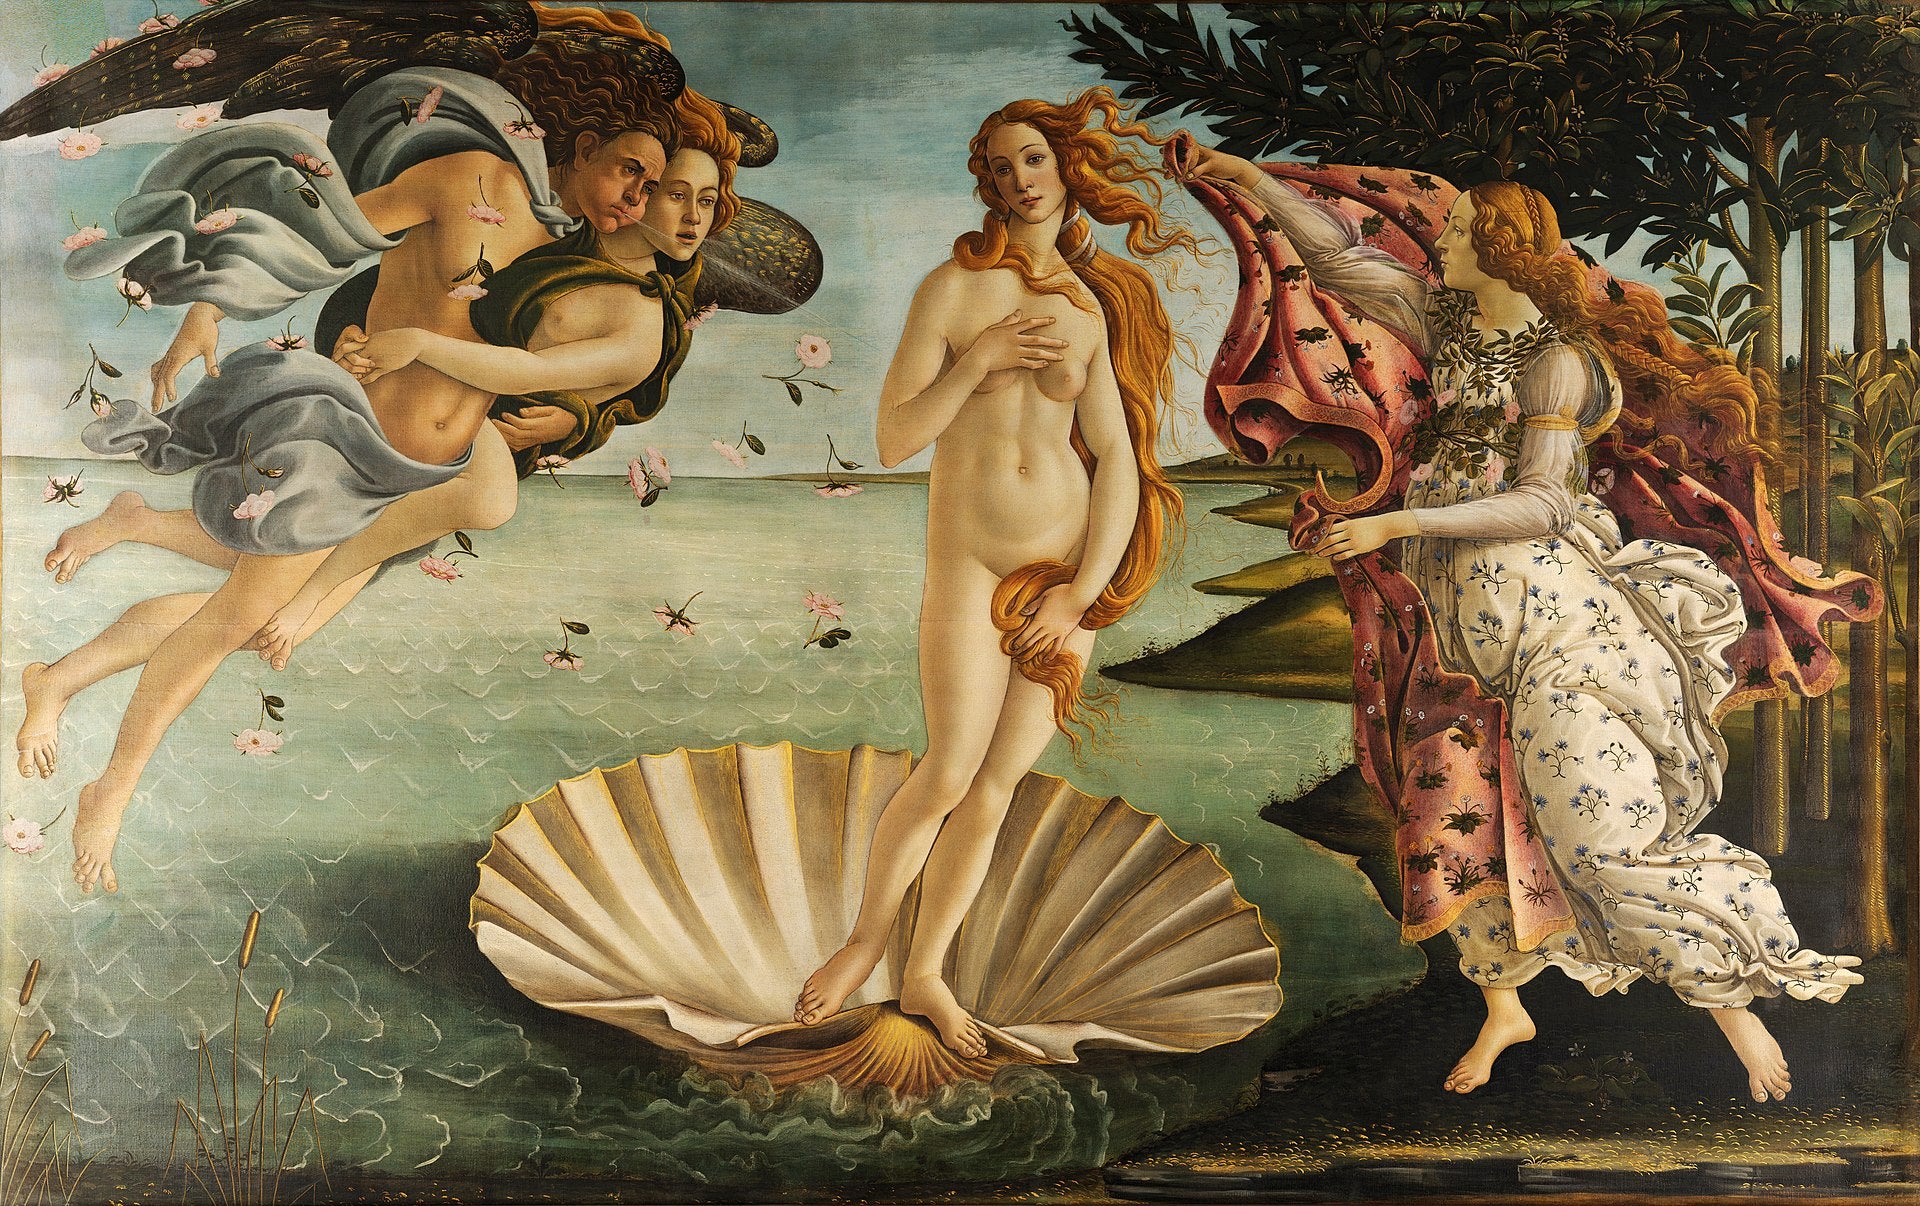 Botticelli'nin Venüs’ün Doğuşu "The Birth of Venus" Tablosu Hikayesi